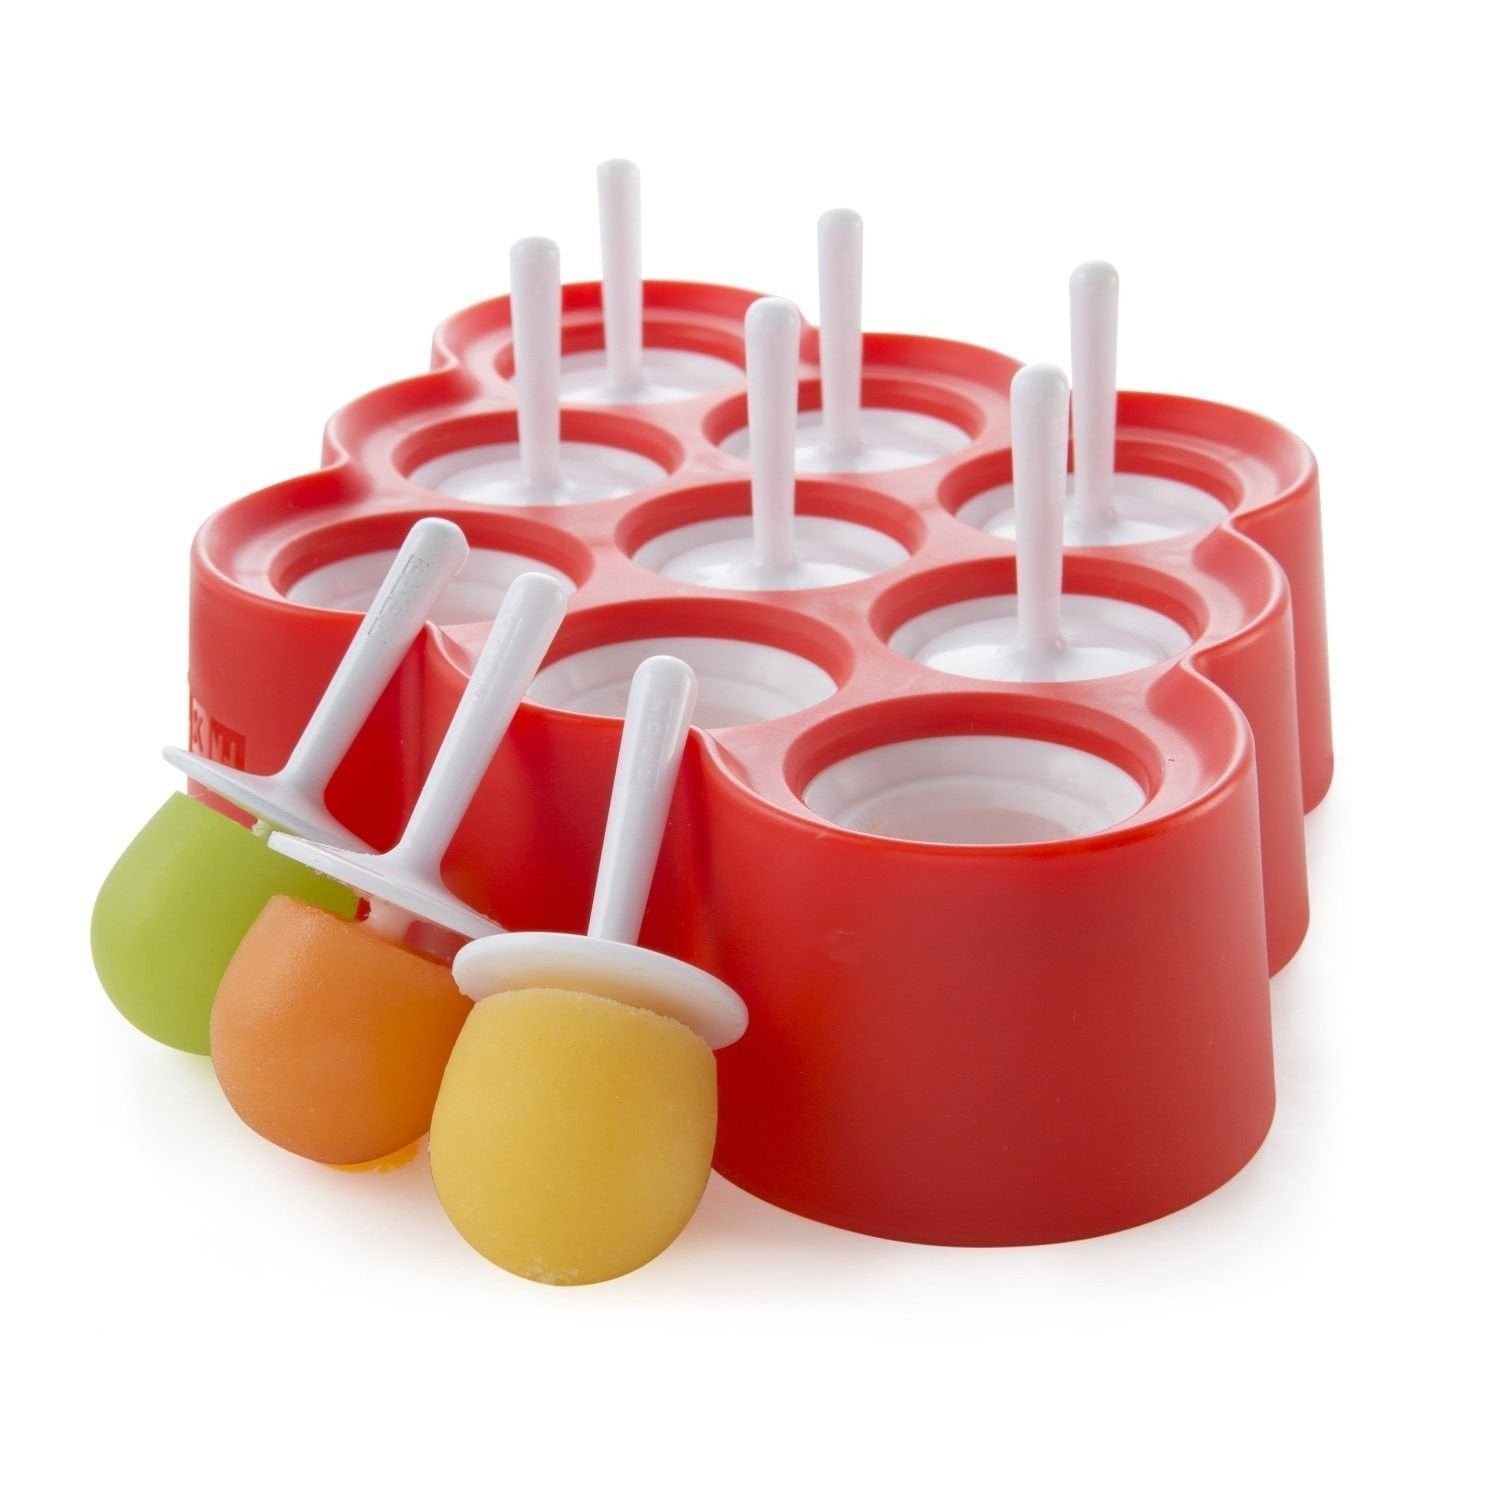 NaiCasy Popsicle forme silicone Popsicle forme Popsicle Maker Ice Pop Forme con 2 coperchio e Sticks BPA Free DIY macchina del ghiaccio per bambini giallo 